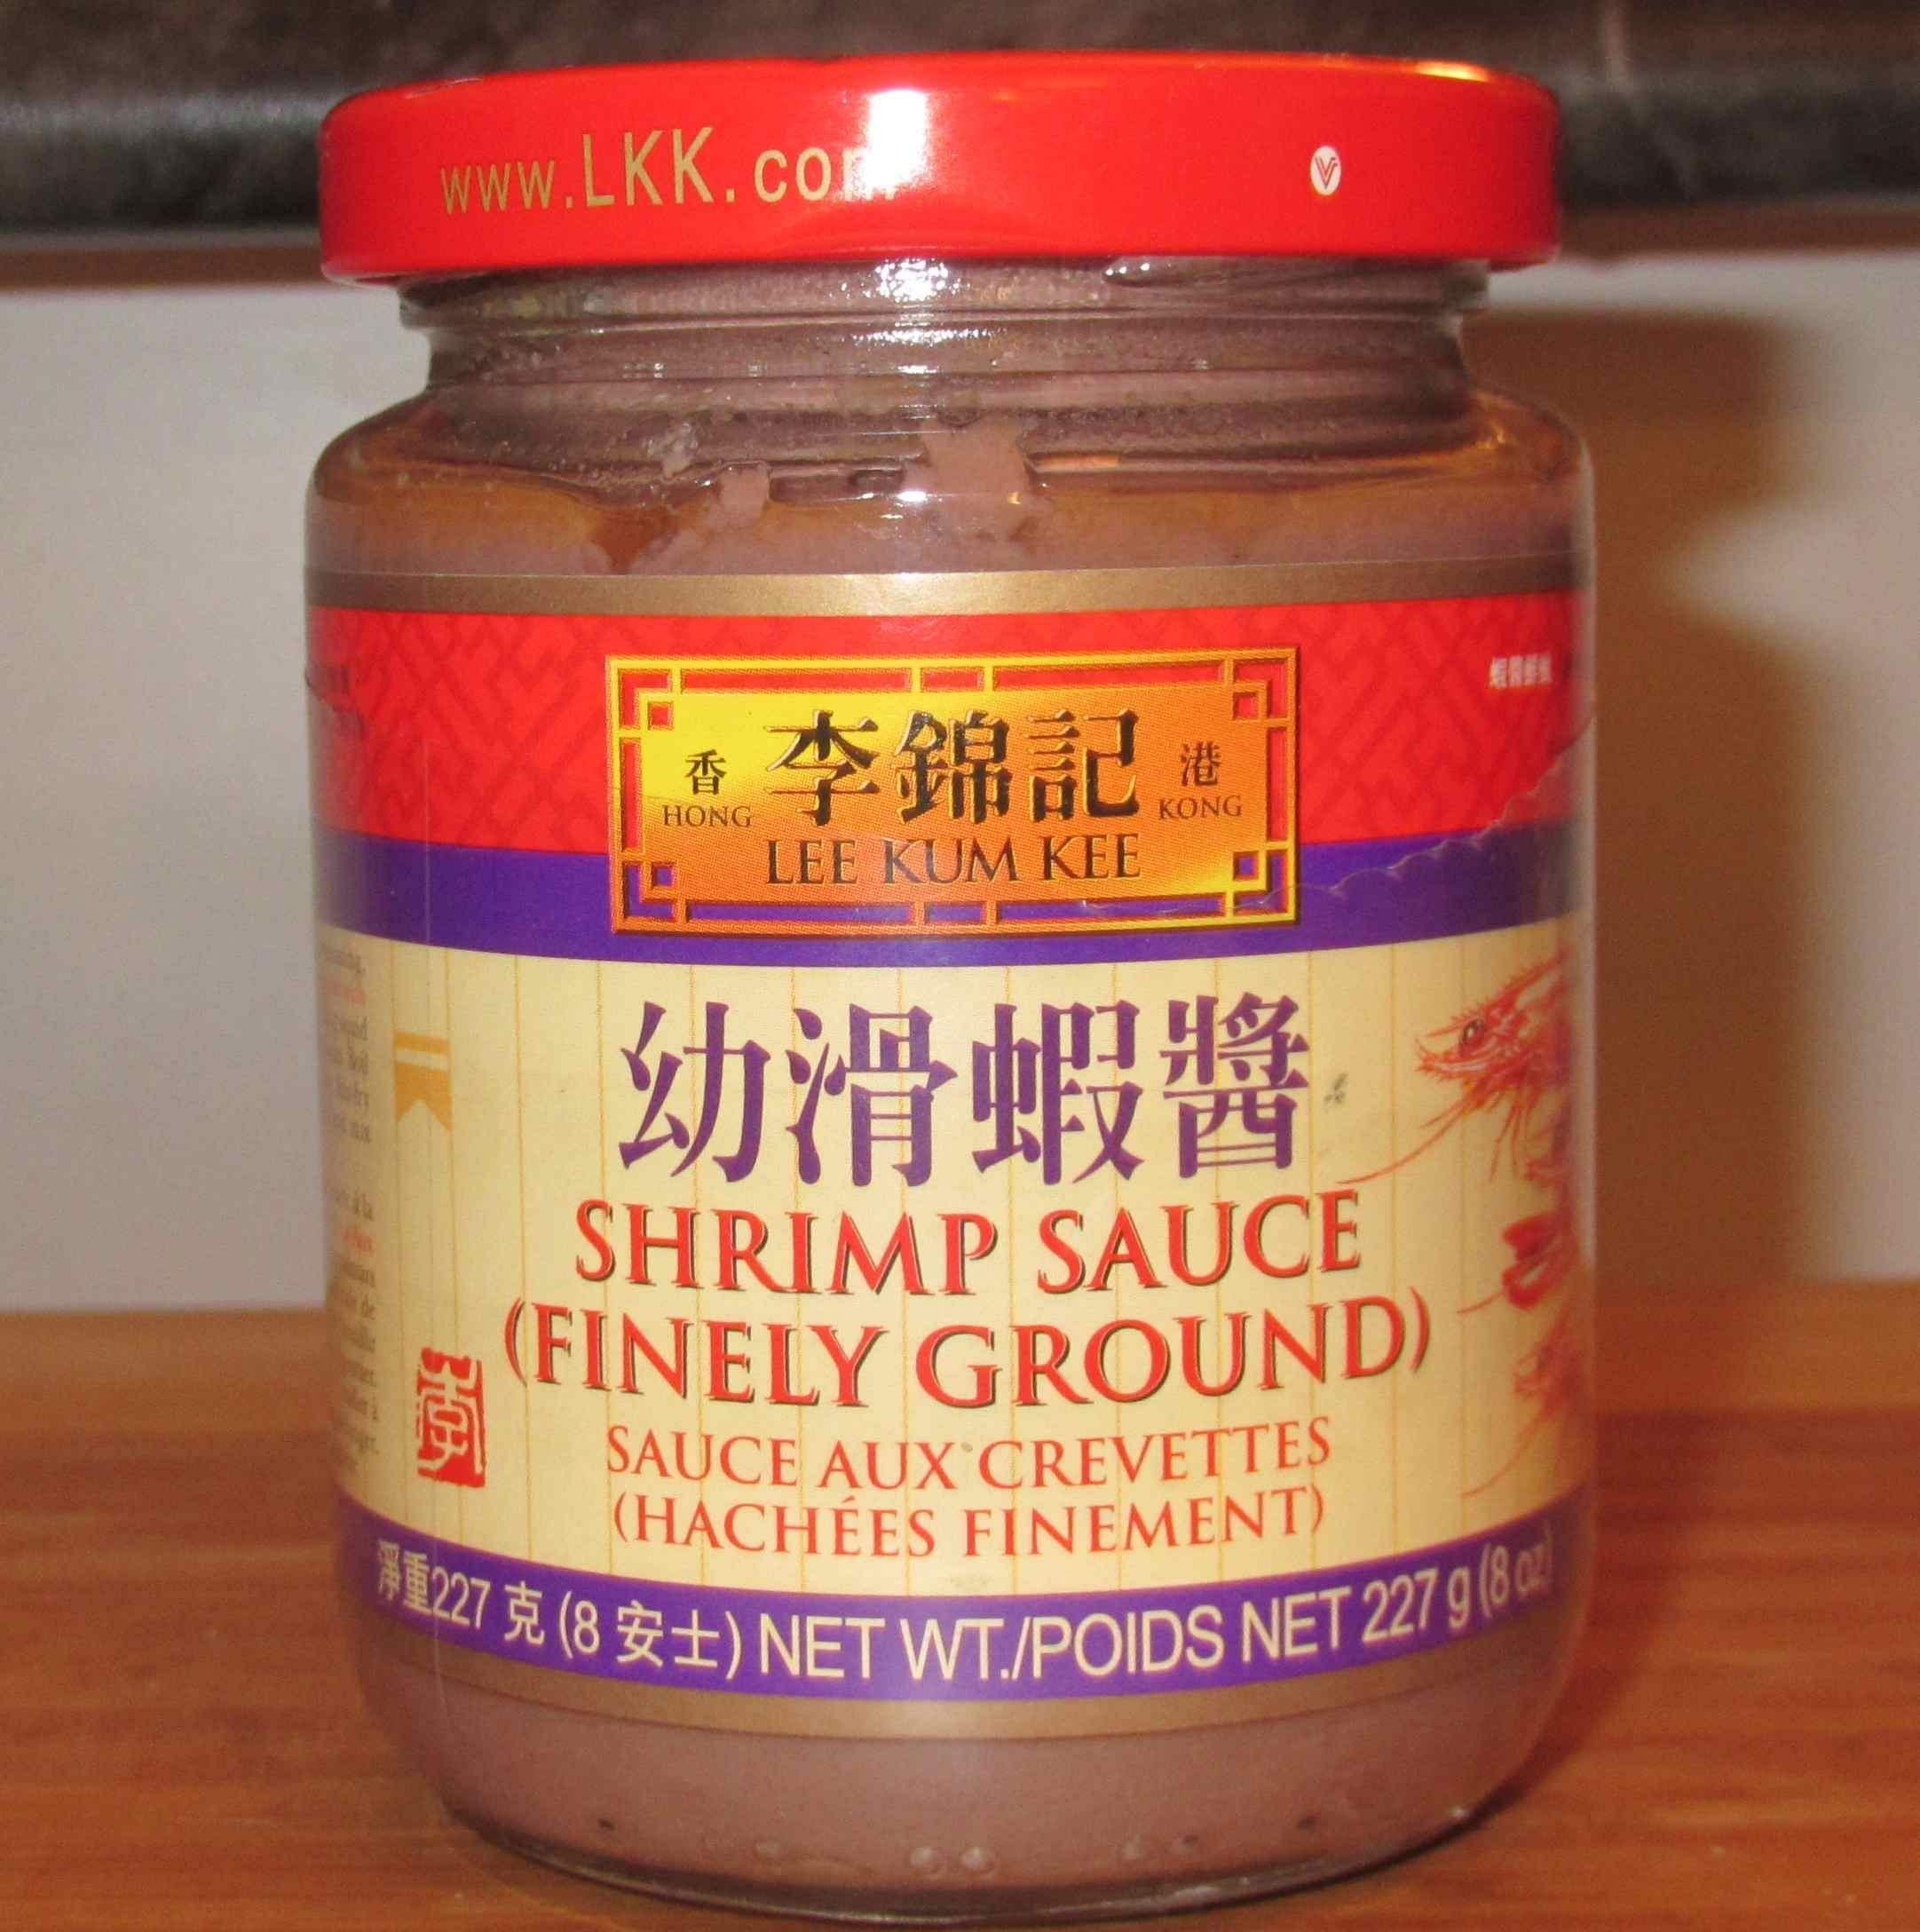 lkk-shrimp-sauce.jpg